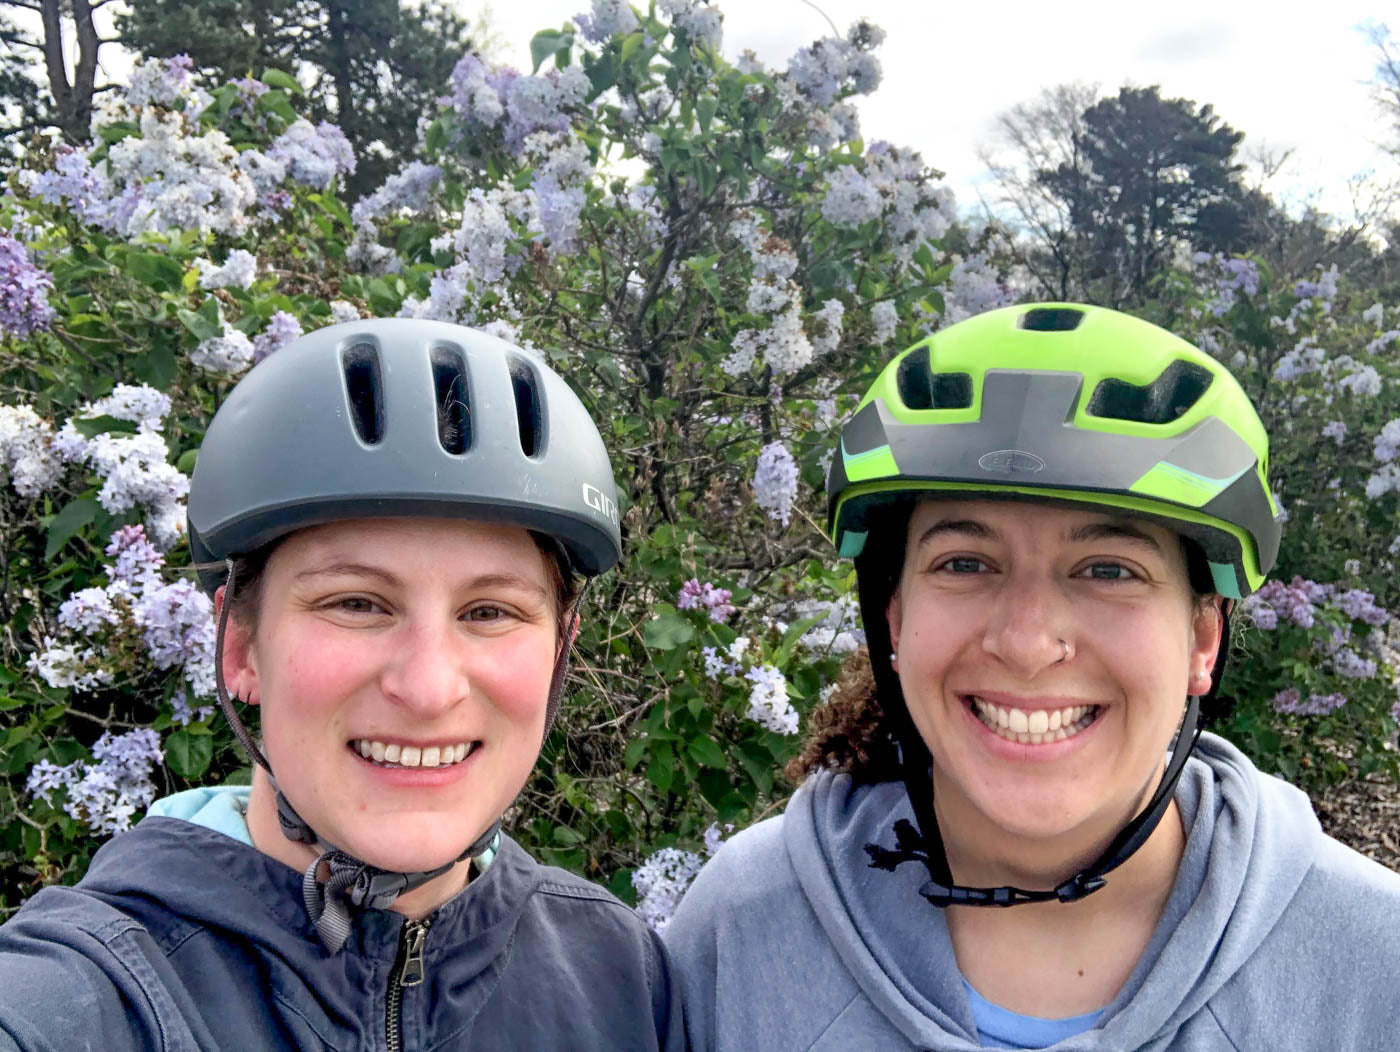 Two women in bike helmets